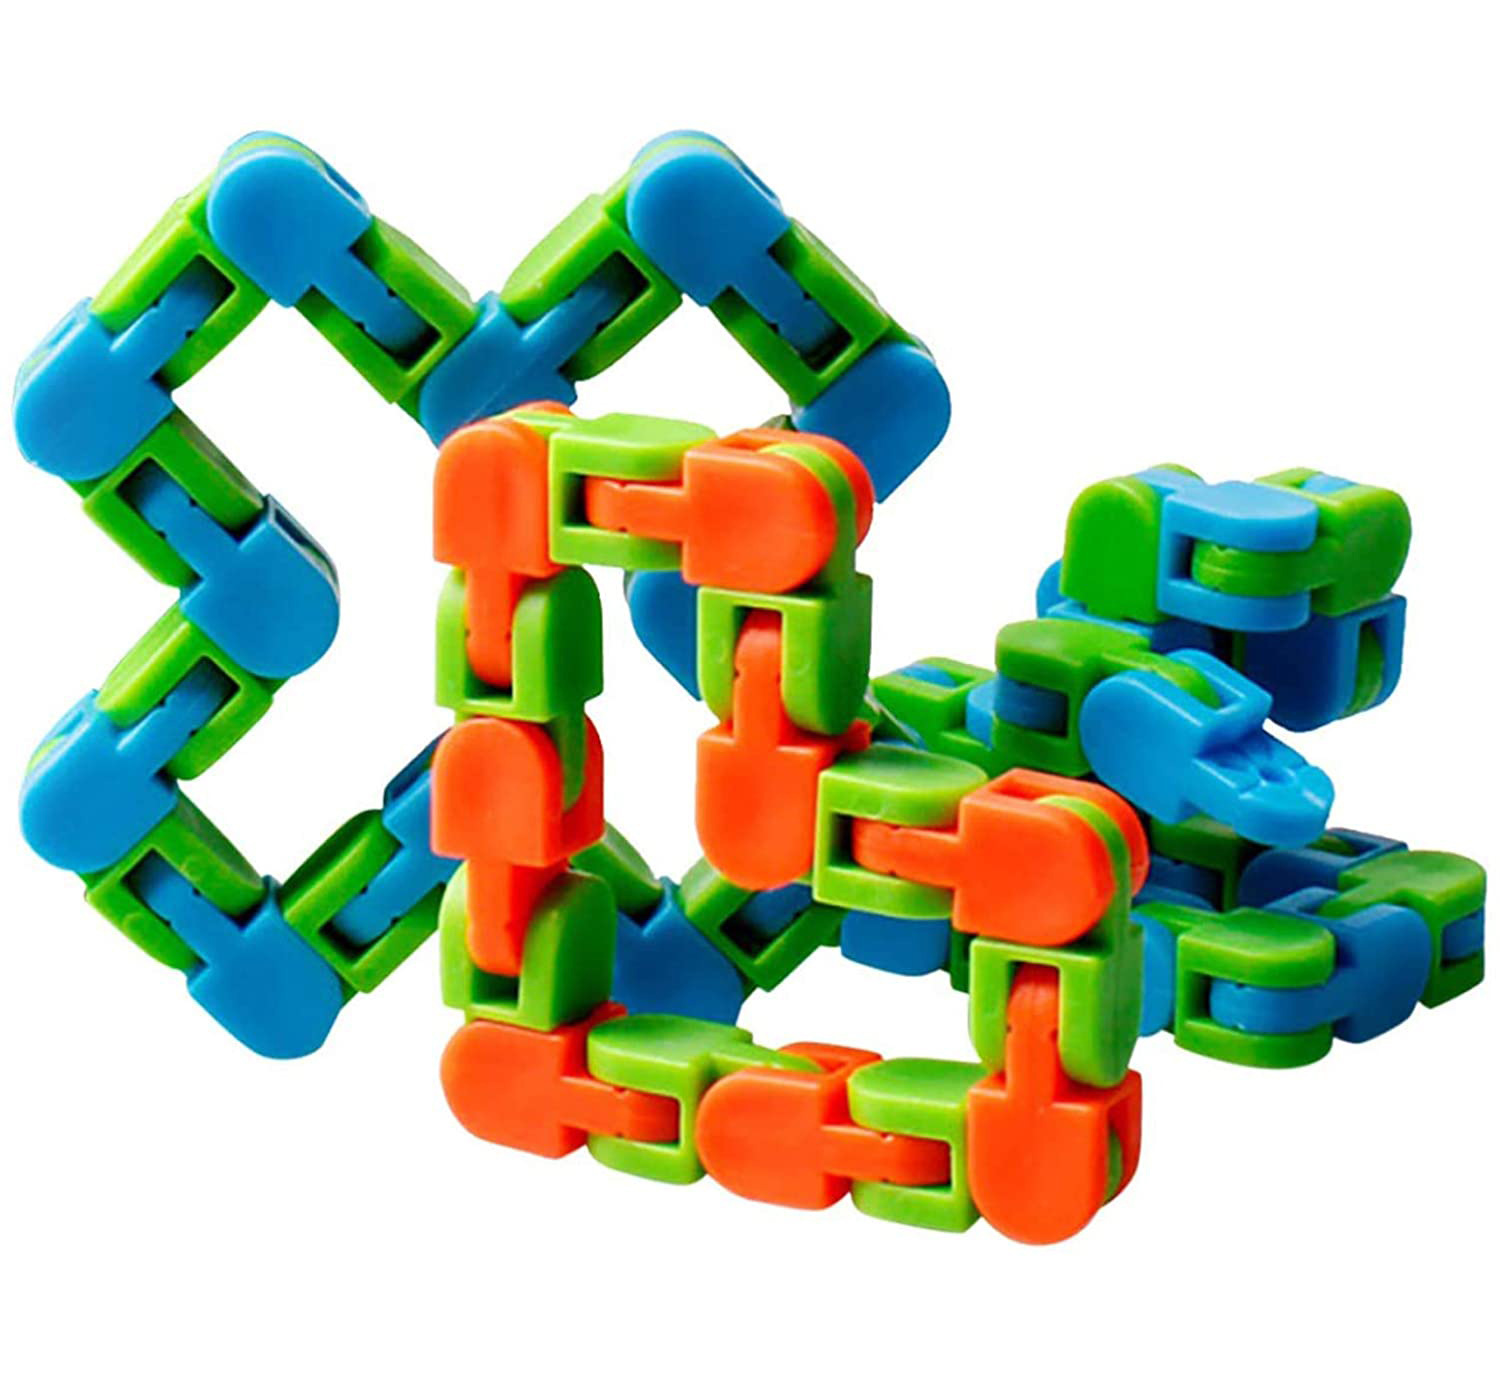 24 Links Wacky Track Snake Puzzle Fidget Toy